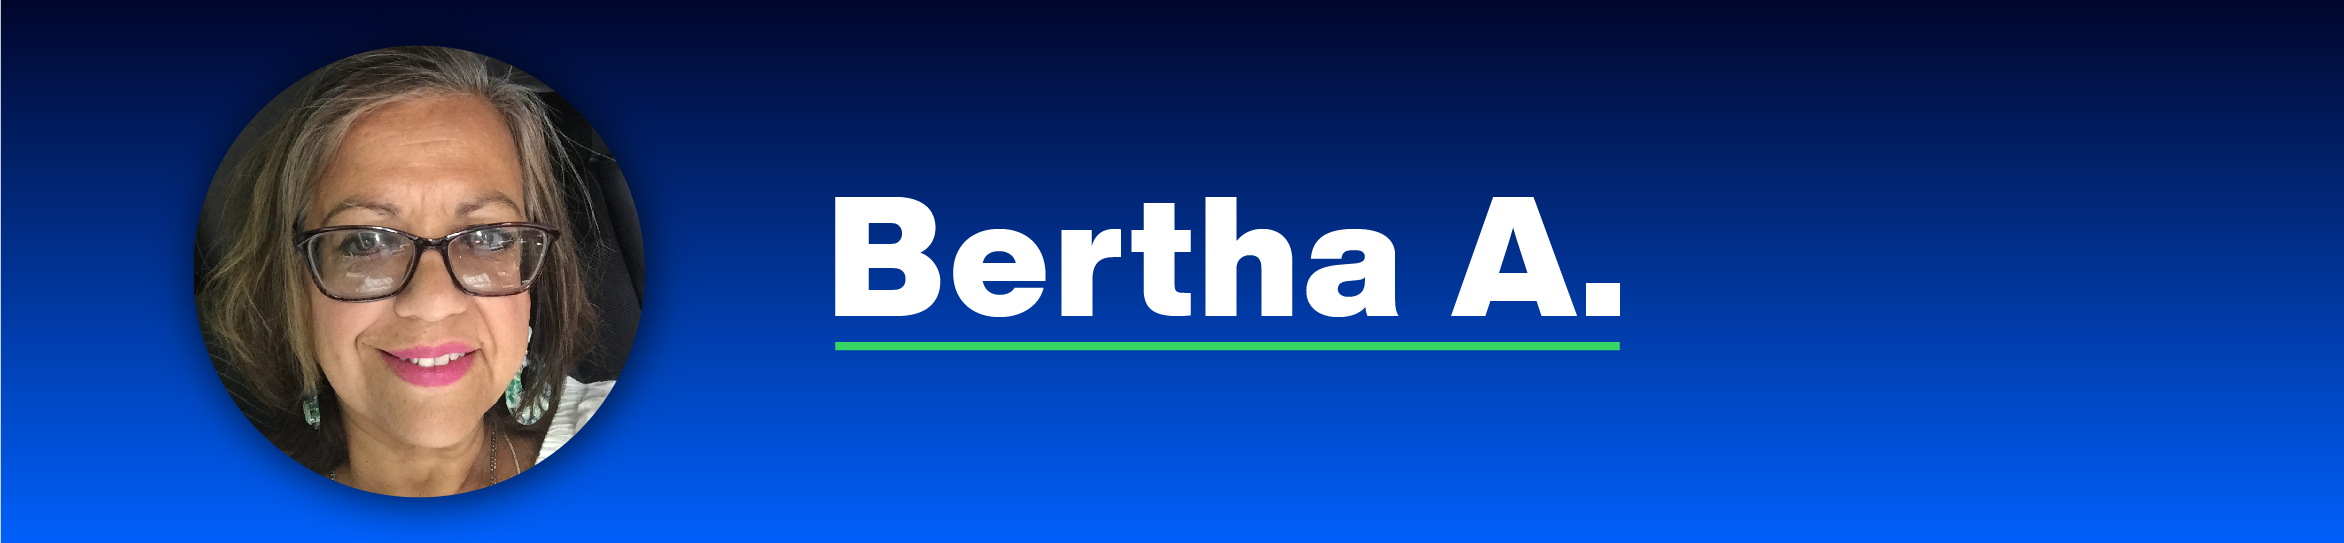 Bertha_A_Member_Story-01.jpg